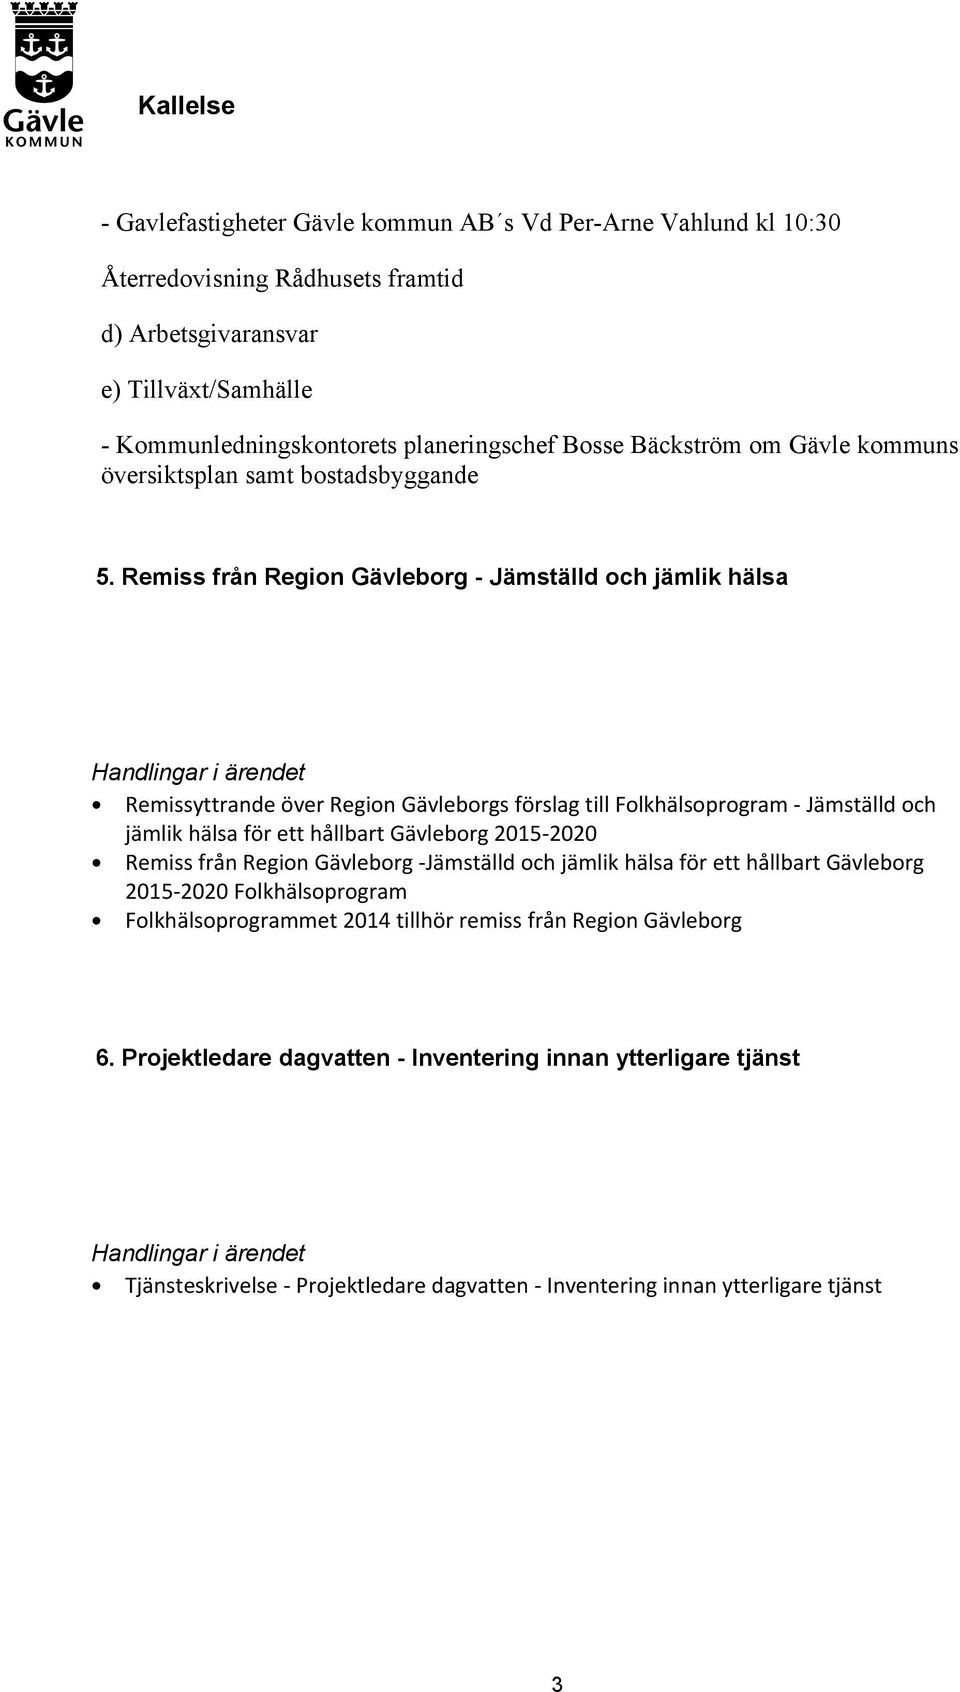 Remiss från Region Gävleborg - Jämställd och jämlik hälsa Remissyttrande över Region Gävleborgs förslag till Folkhälsoprogram - Jämställd och jämlik hälsa för ett hållbart Gävleborg 2015-2020